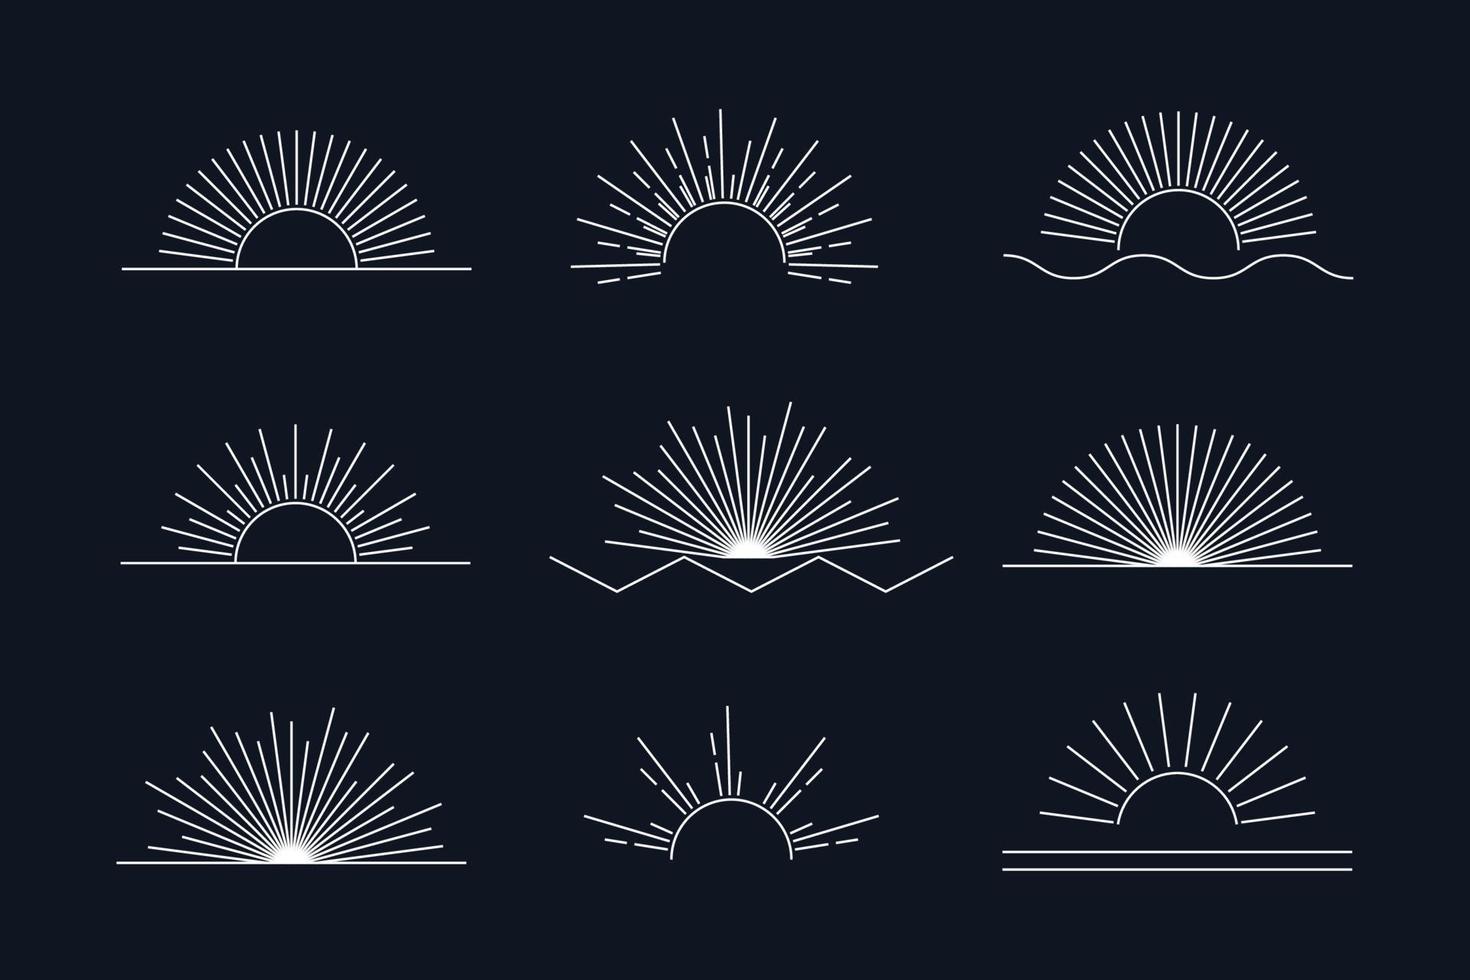 conjunto de sol de vetor de ícones e símbolos boho lineares brancos, modelos de design de logotipo de sol, elementos de design abstrato para decoração em estilo minimalista moderno para postagens de mídia social, histórias, isolado